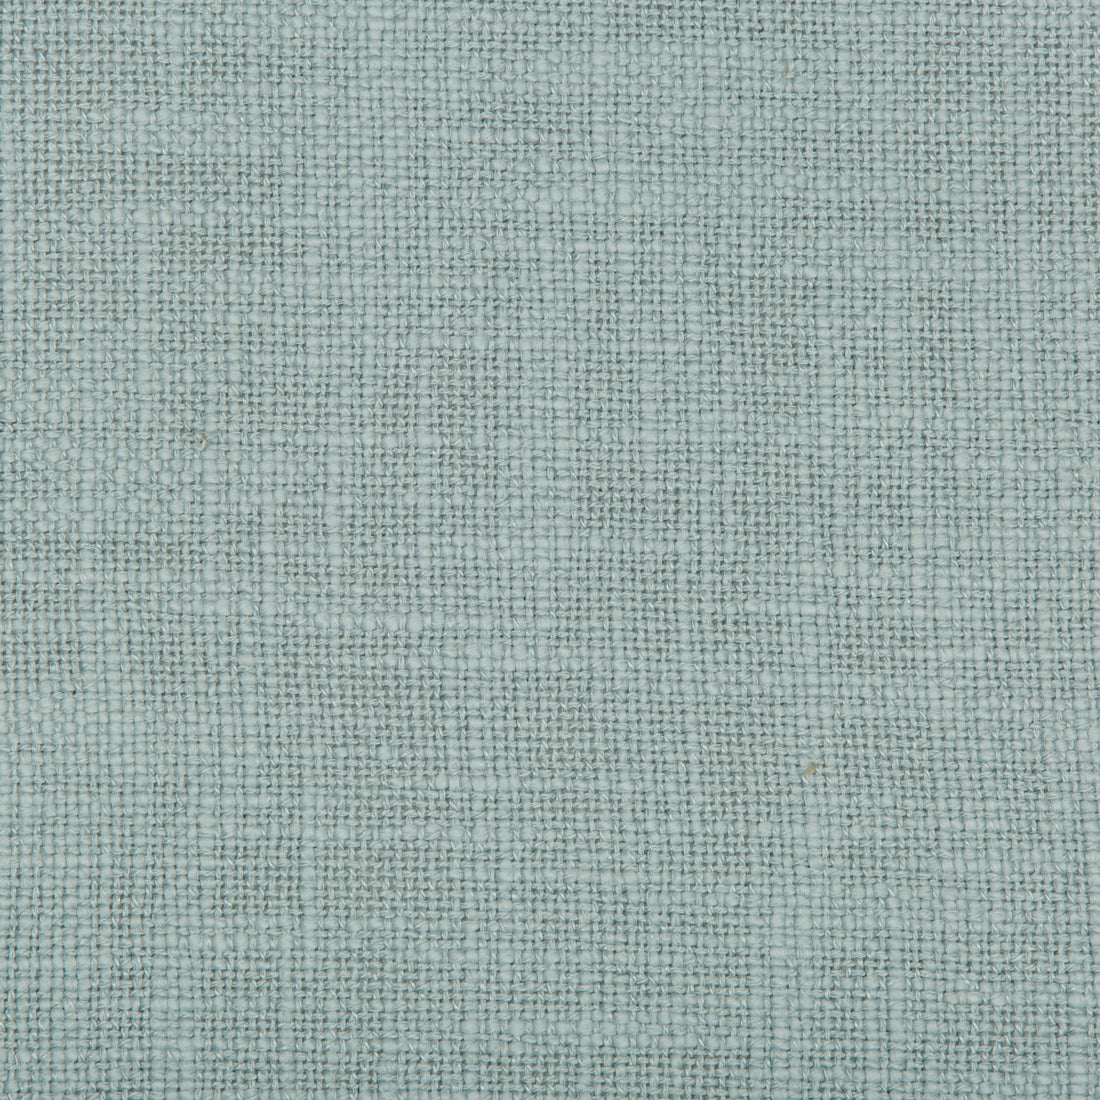 Kravet Design fabric in 4585-15 color - pattern 4585.15.0 - by Kravet Design